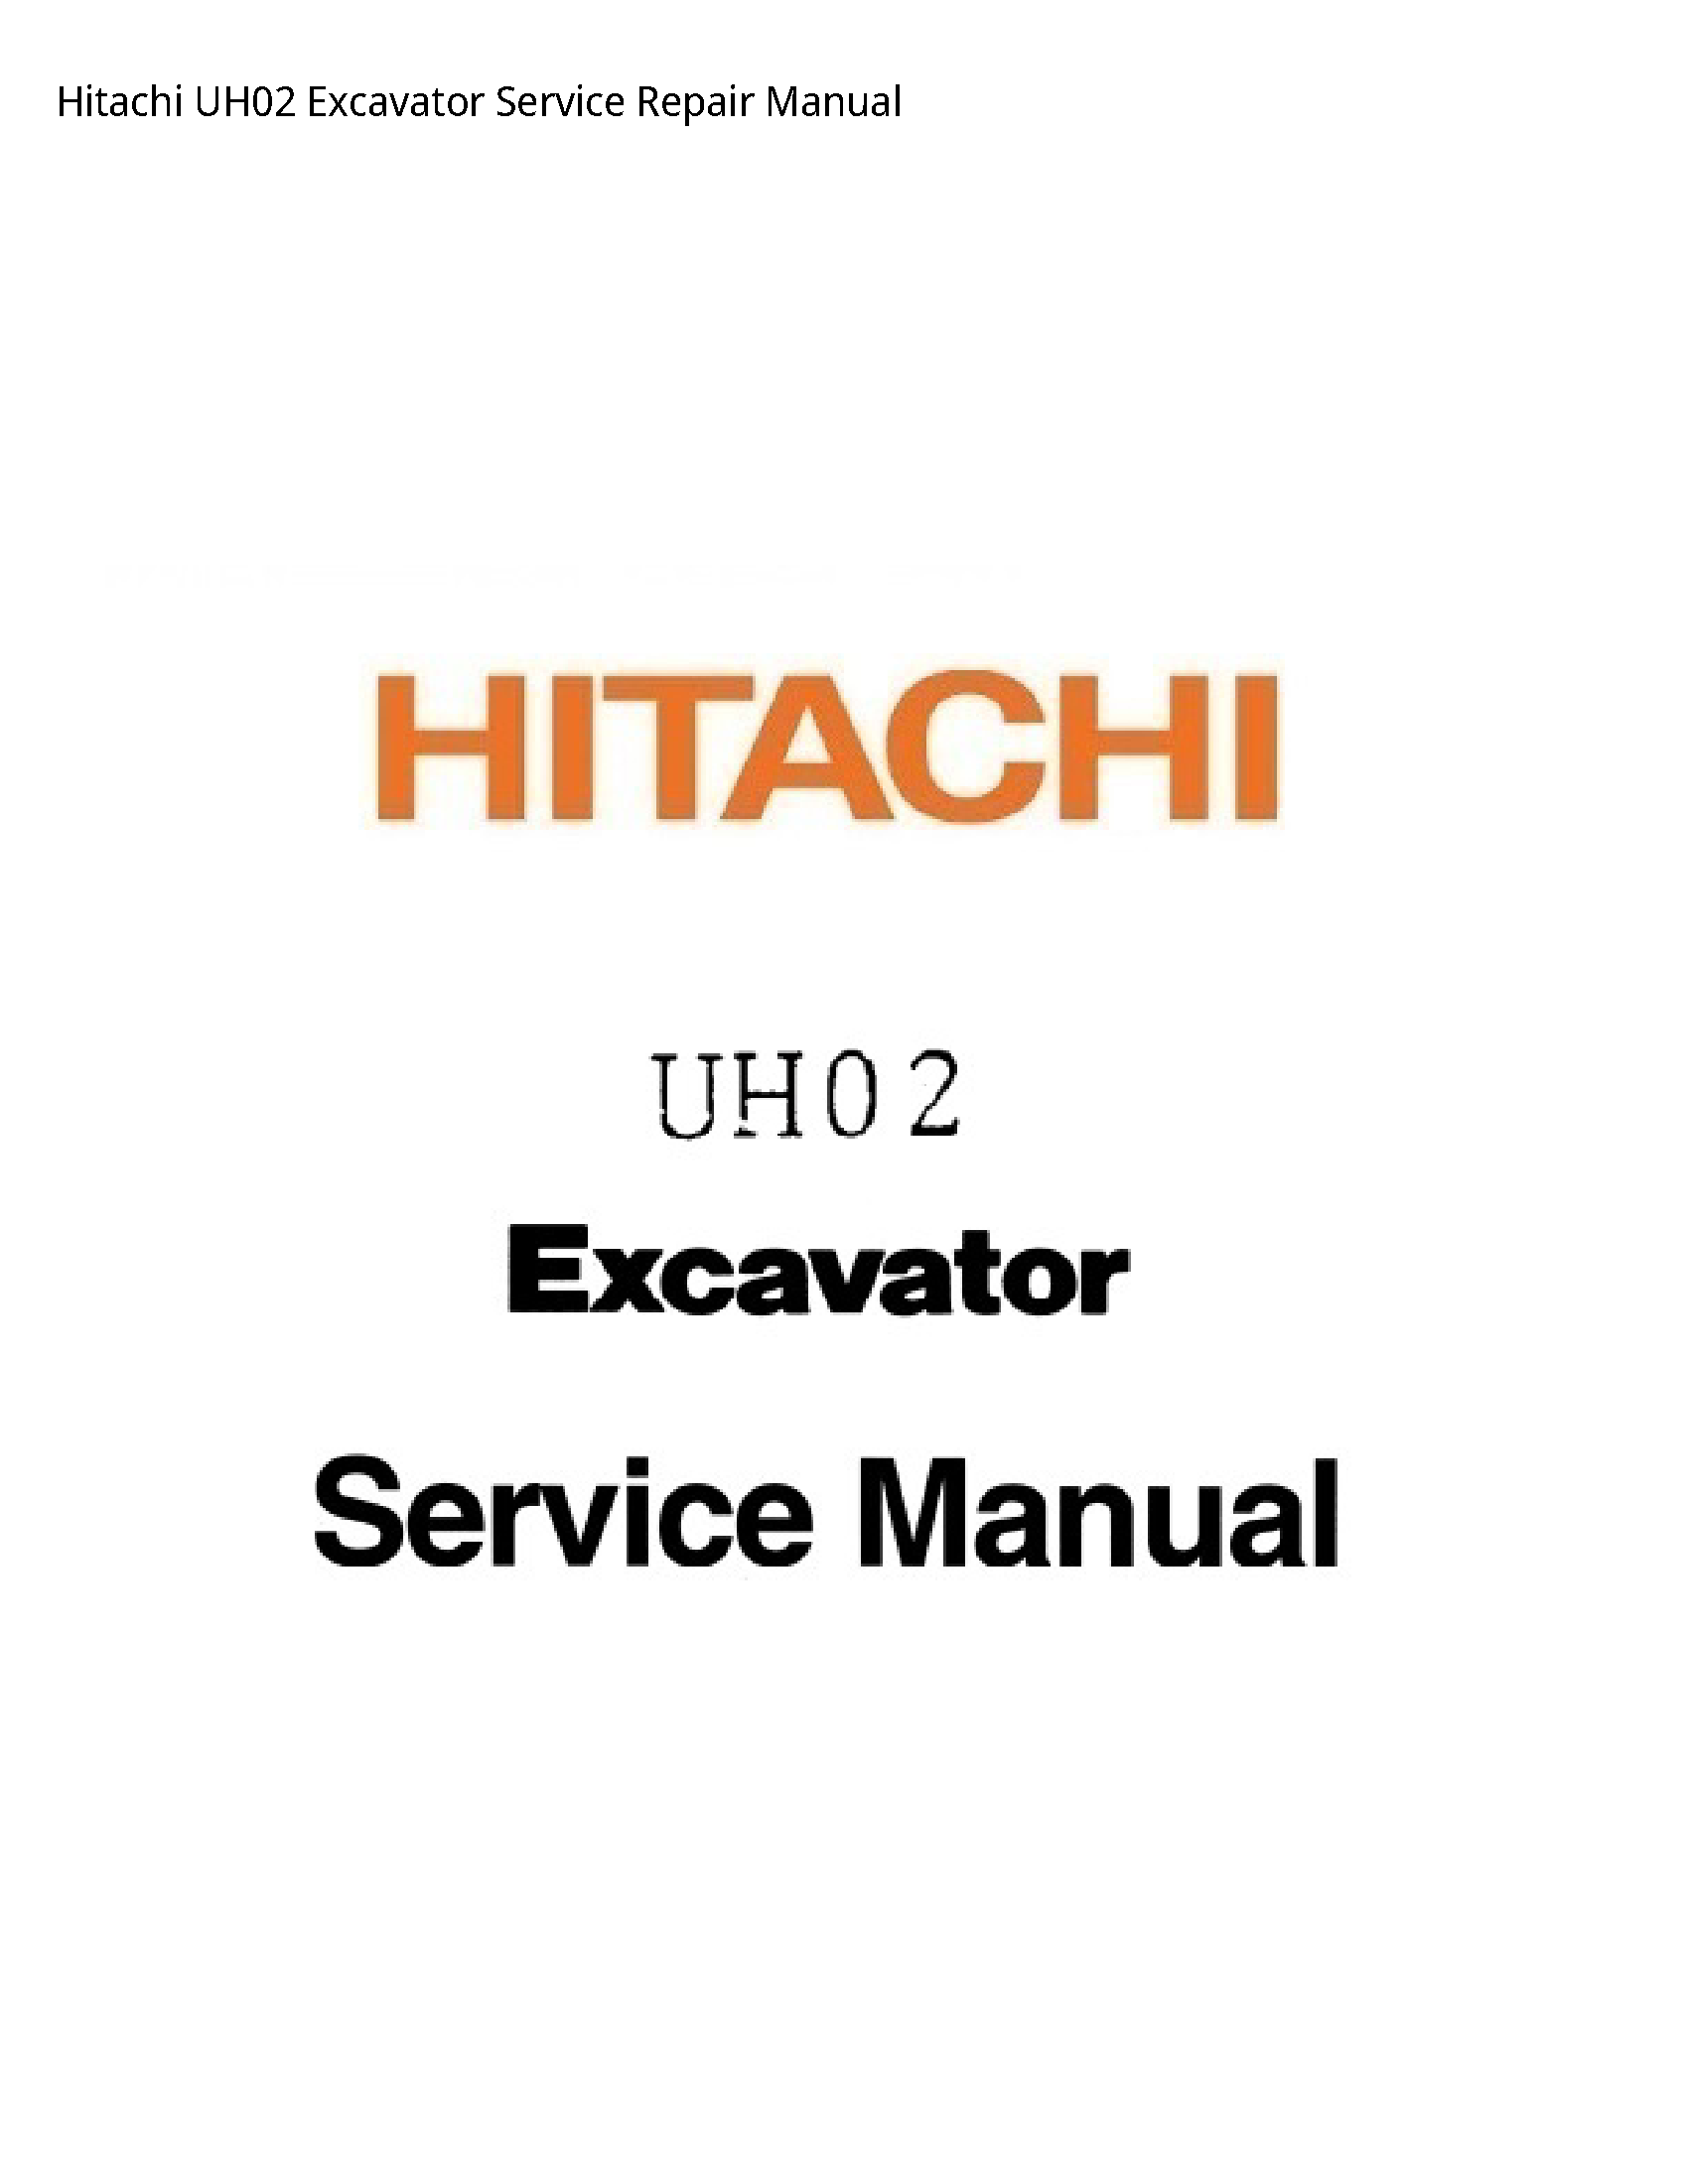 Hitachi UH02 Excavator manual